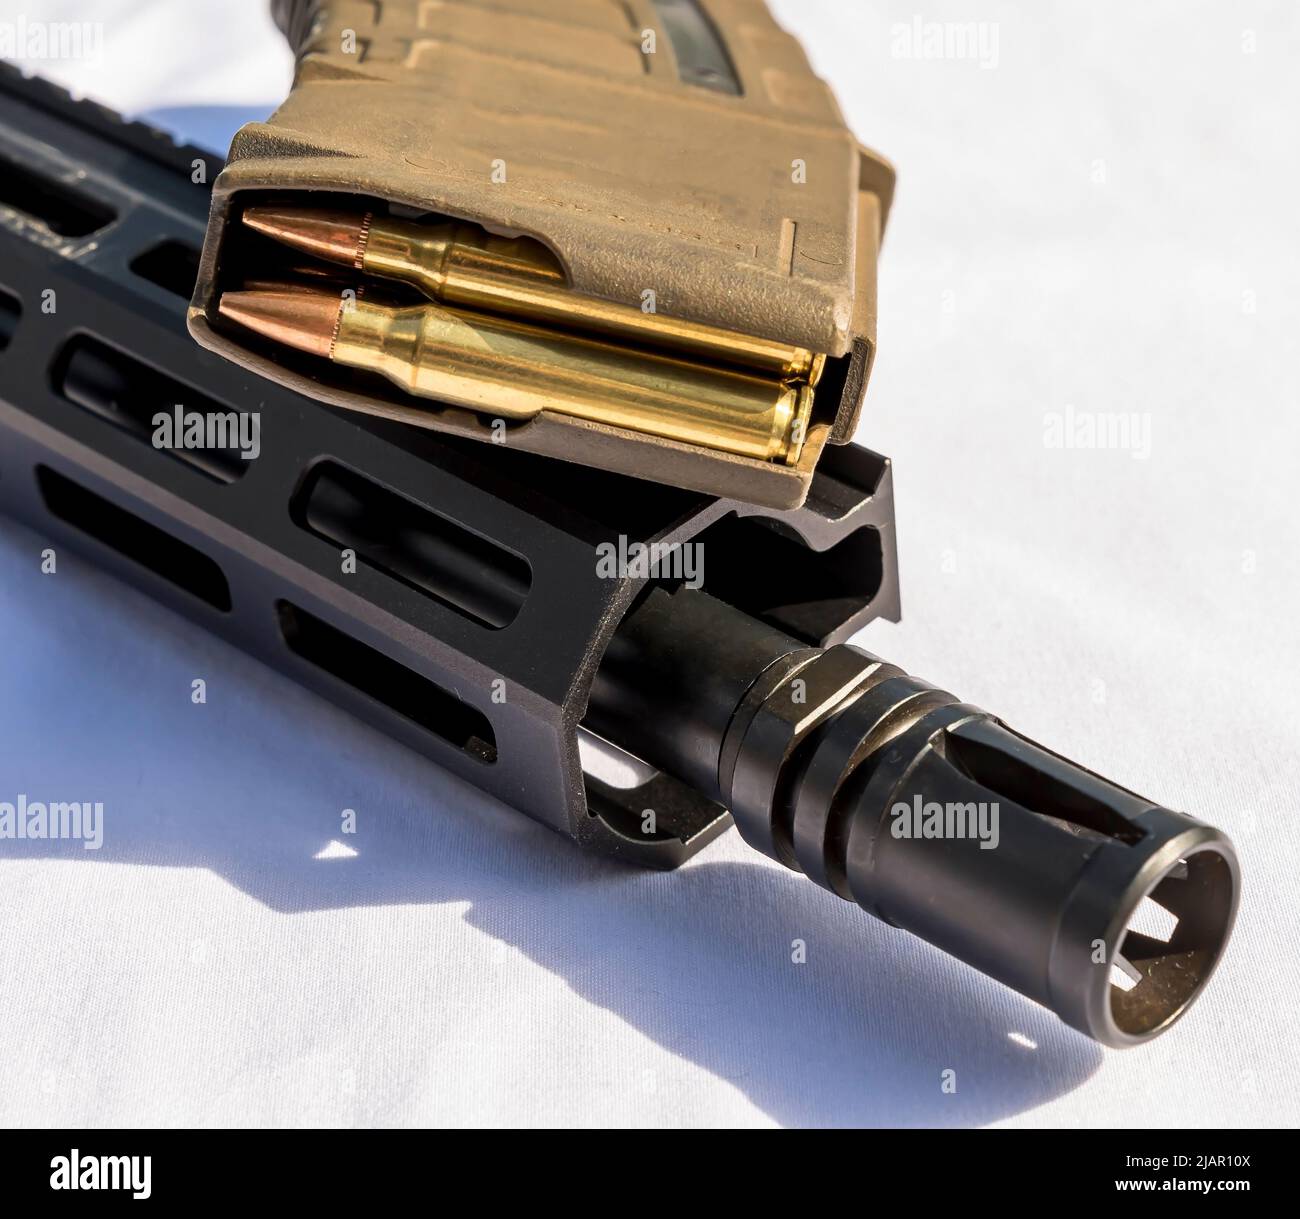 Die Mündung und der Lauf eines AR 15-Gewehr unter einem Gewehrmagazin, das mit Kugeln des Kalibers 223 auf weißem Grund beladen ist Stockfoto